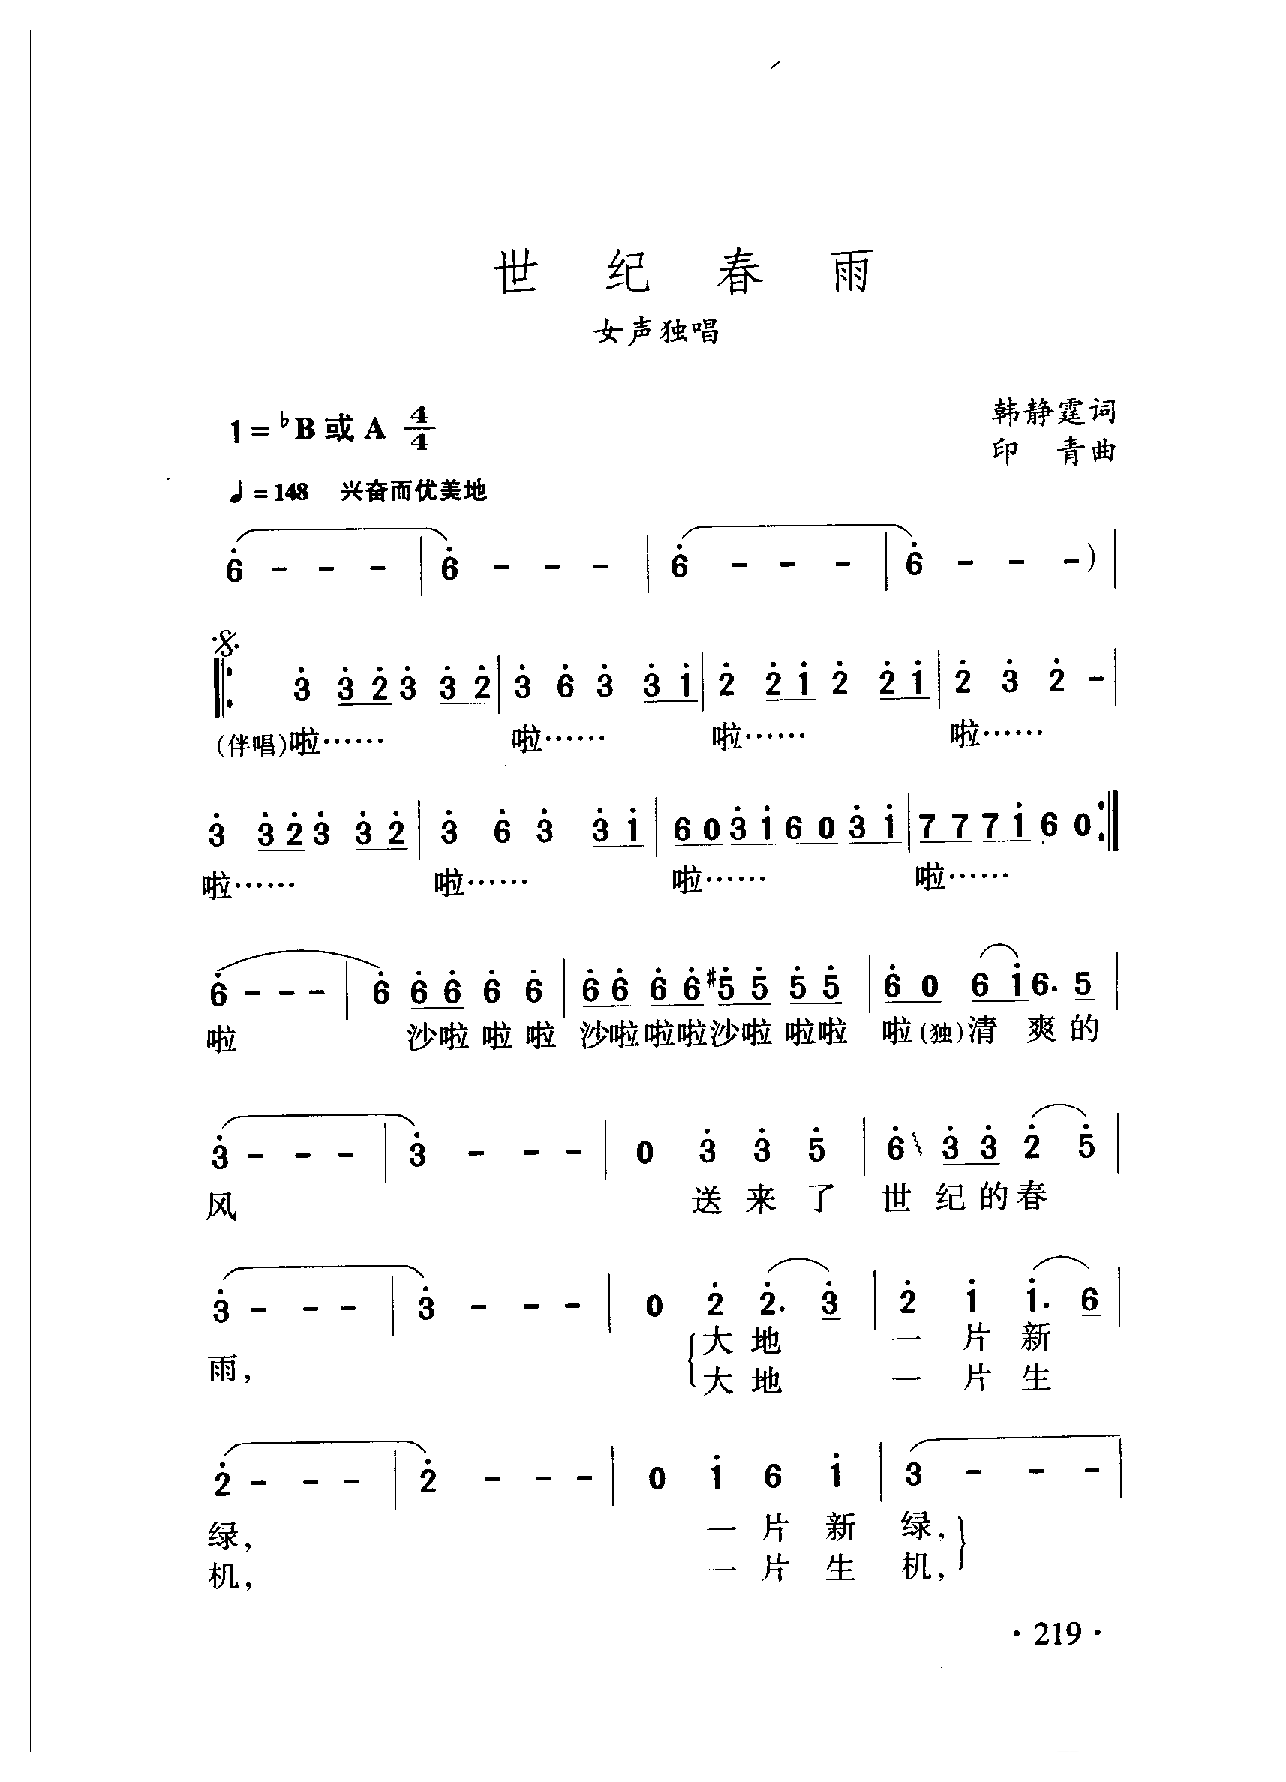 中国名歌[世纪春雨]乐谱